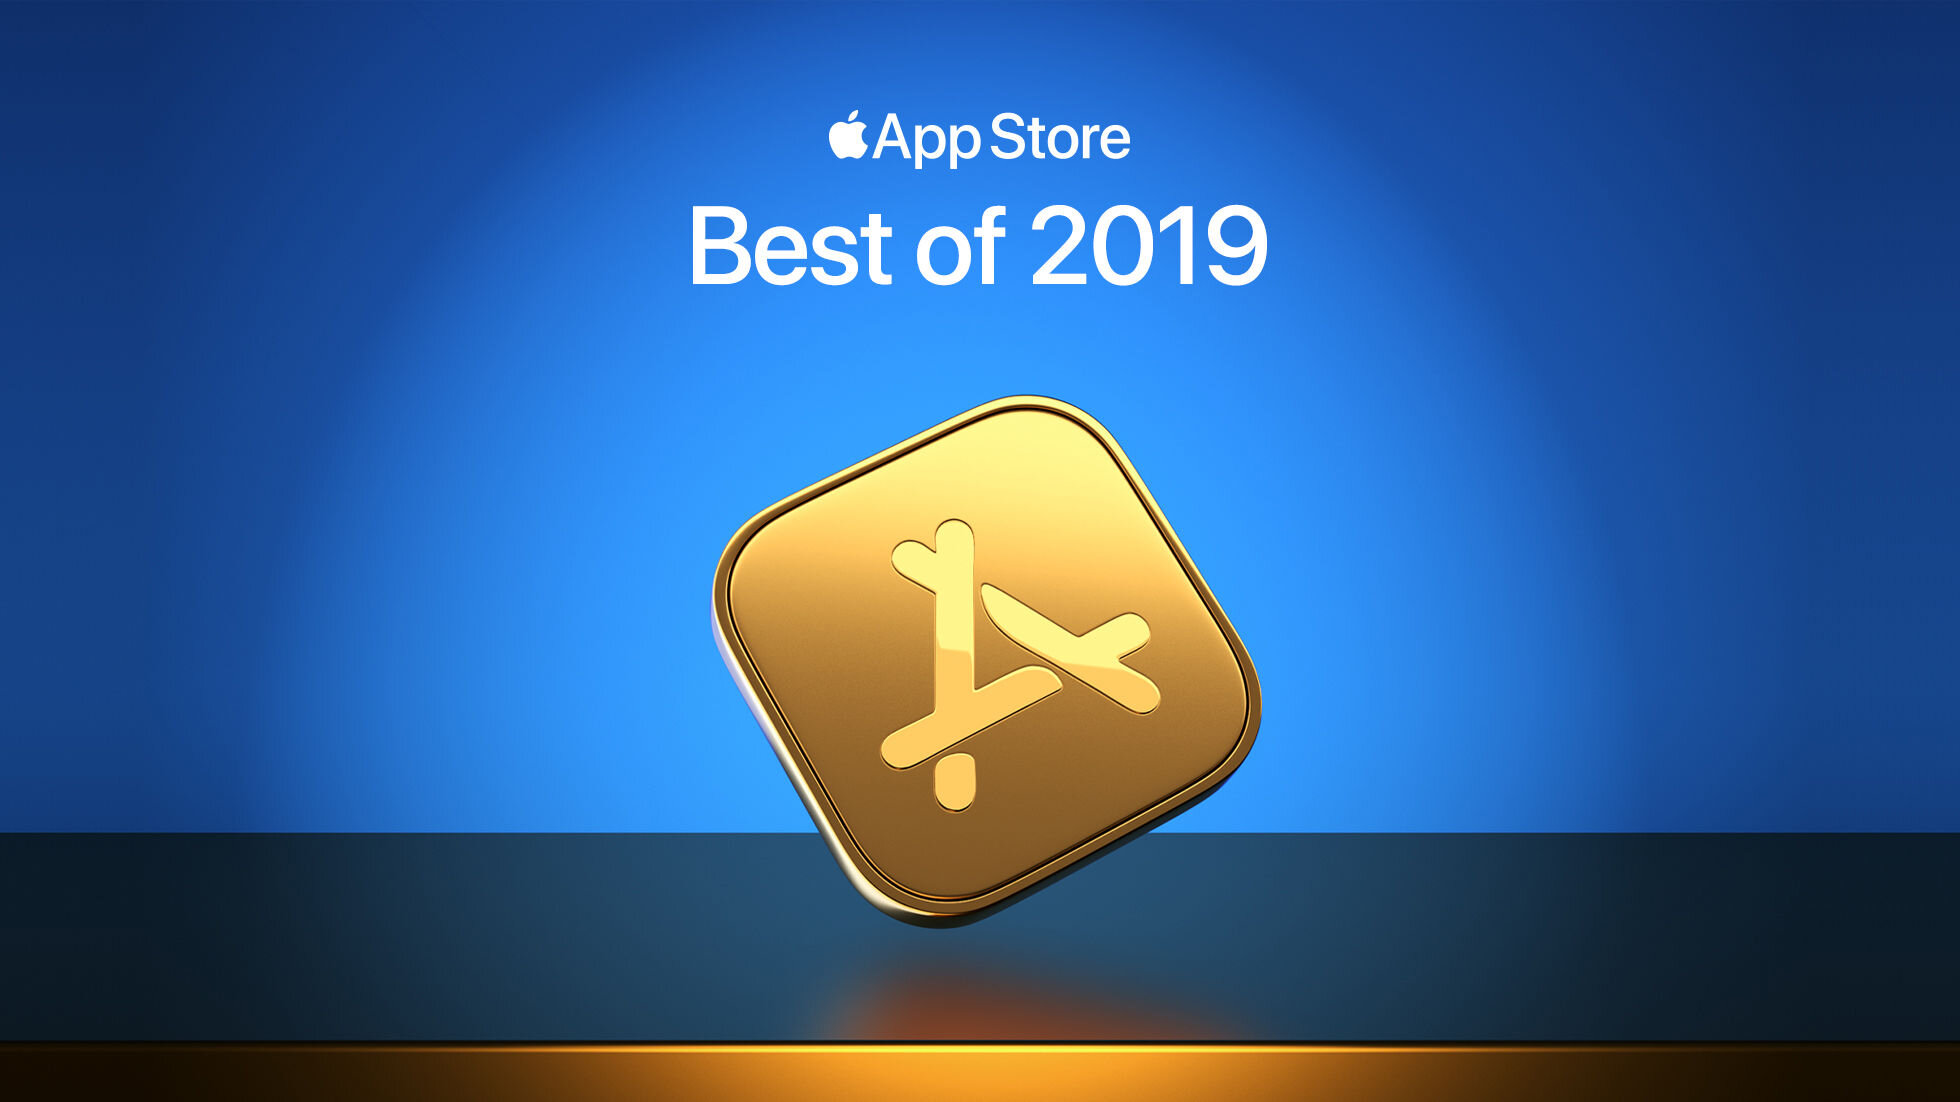 Η Apple ανακοίνωσε τα καλύτερα και δημοφιλέστερα apps του 2019